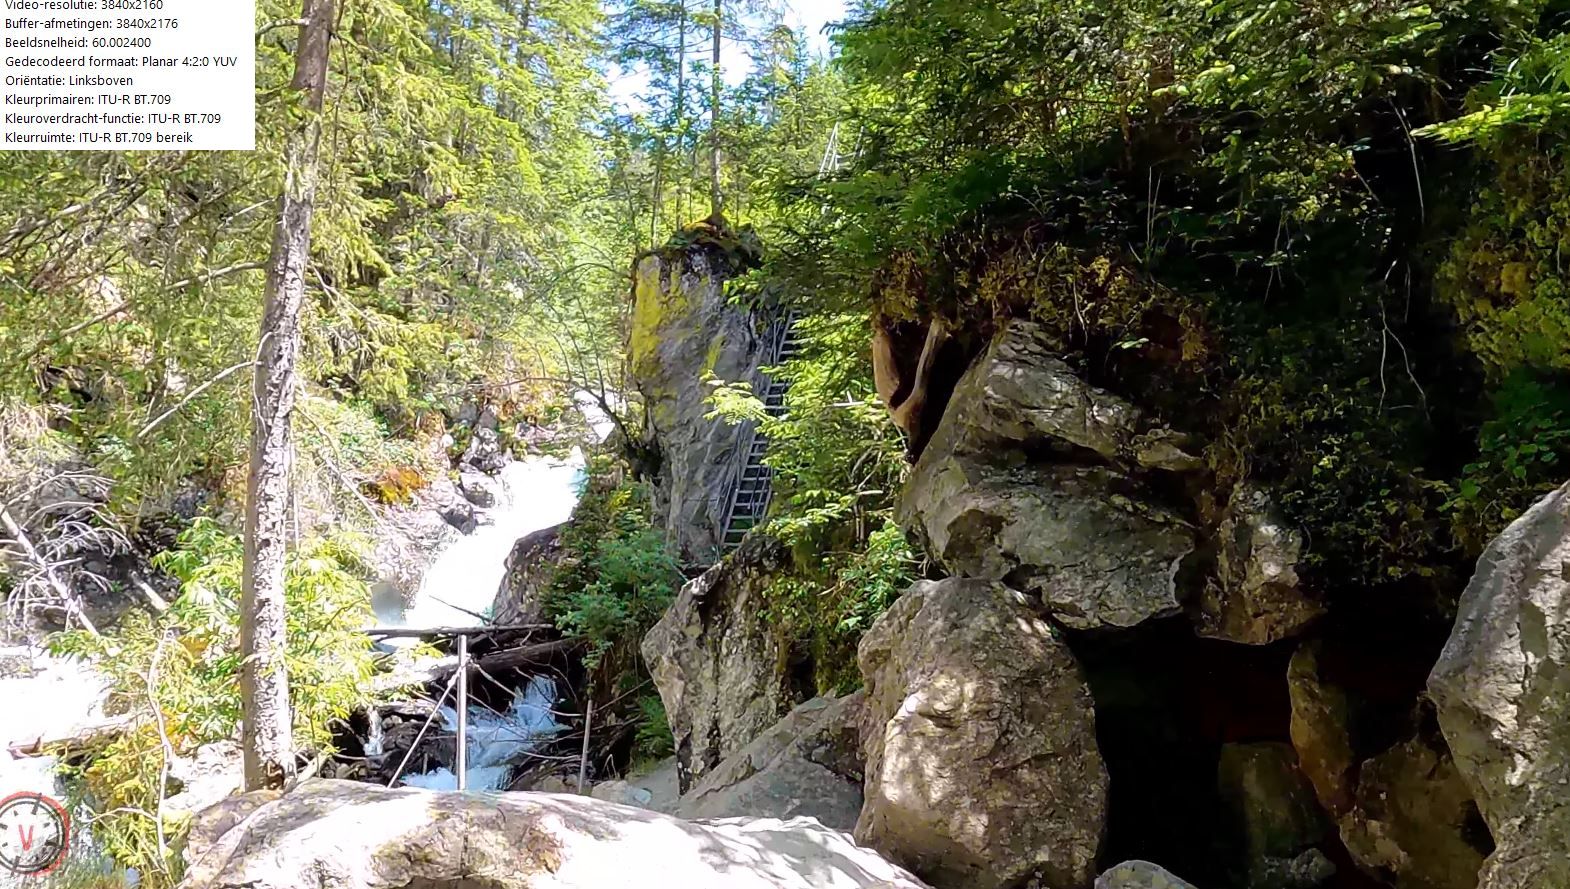 Riesach Waterfalls & Suspension Bridge in the Alpinsteig Höll &#55356;&#56806;&#55356;&#56825; Wild Waters Schladming 4K